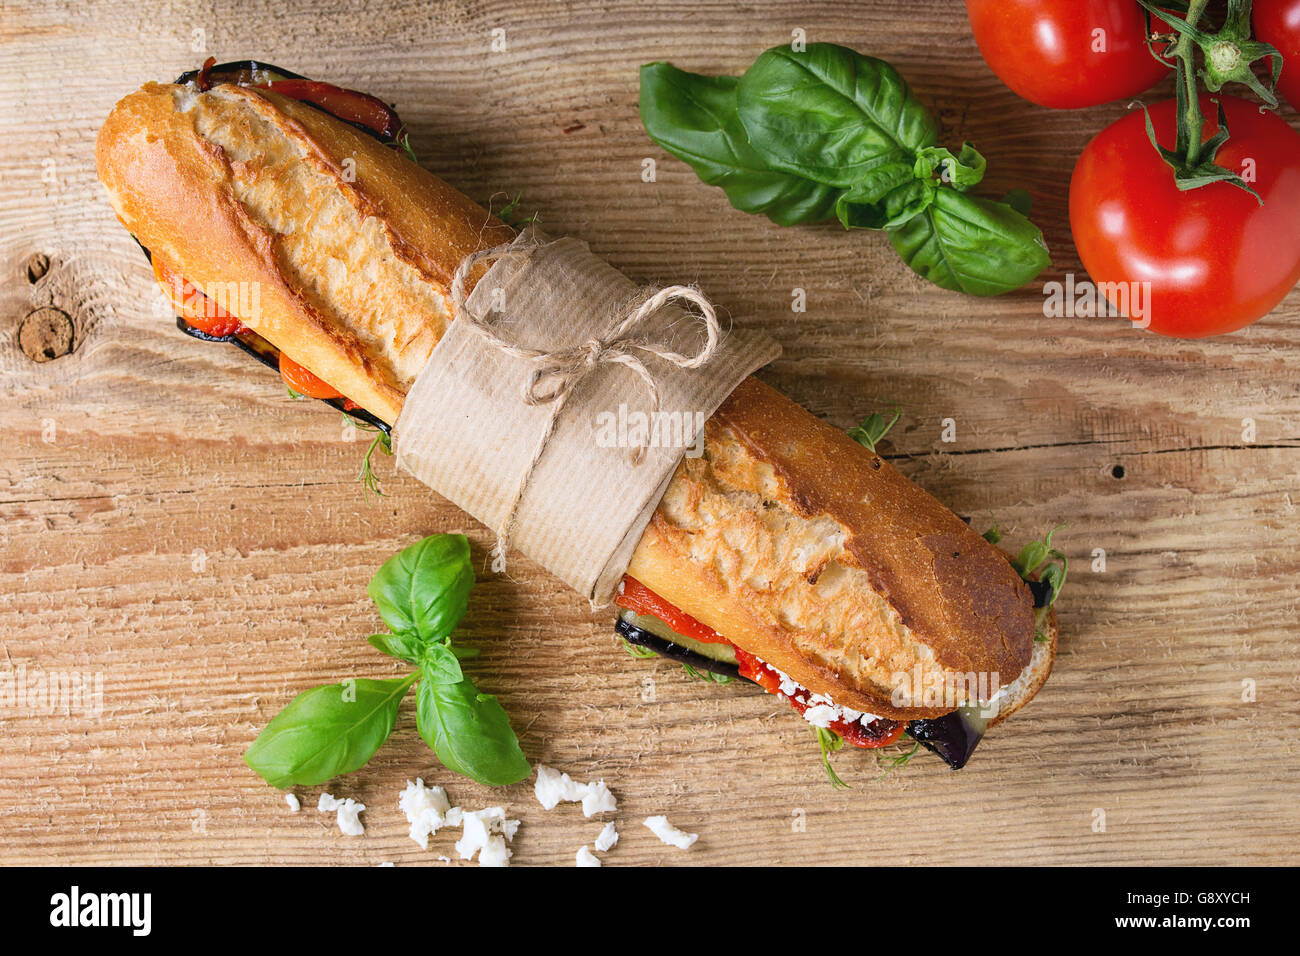 Tapeziert vegetarische Baguette u-Boot-Sandwich mit gegrillter Aubergine, Paprika und Feta-Käse auf Holz hacken über dunkel an Bord Stockfoto